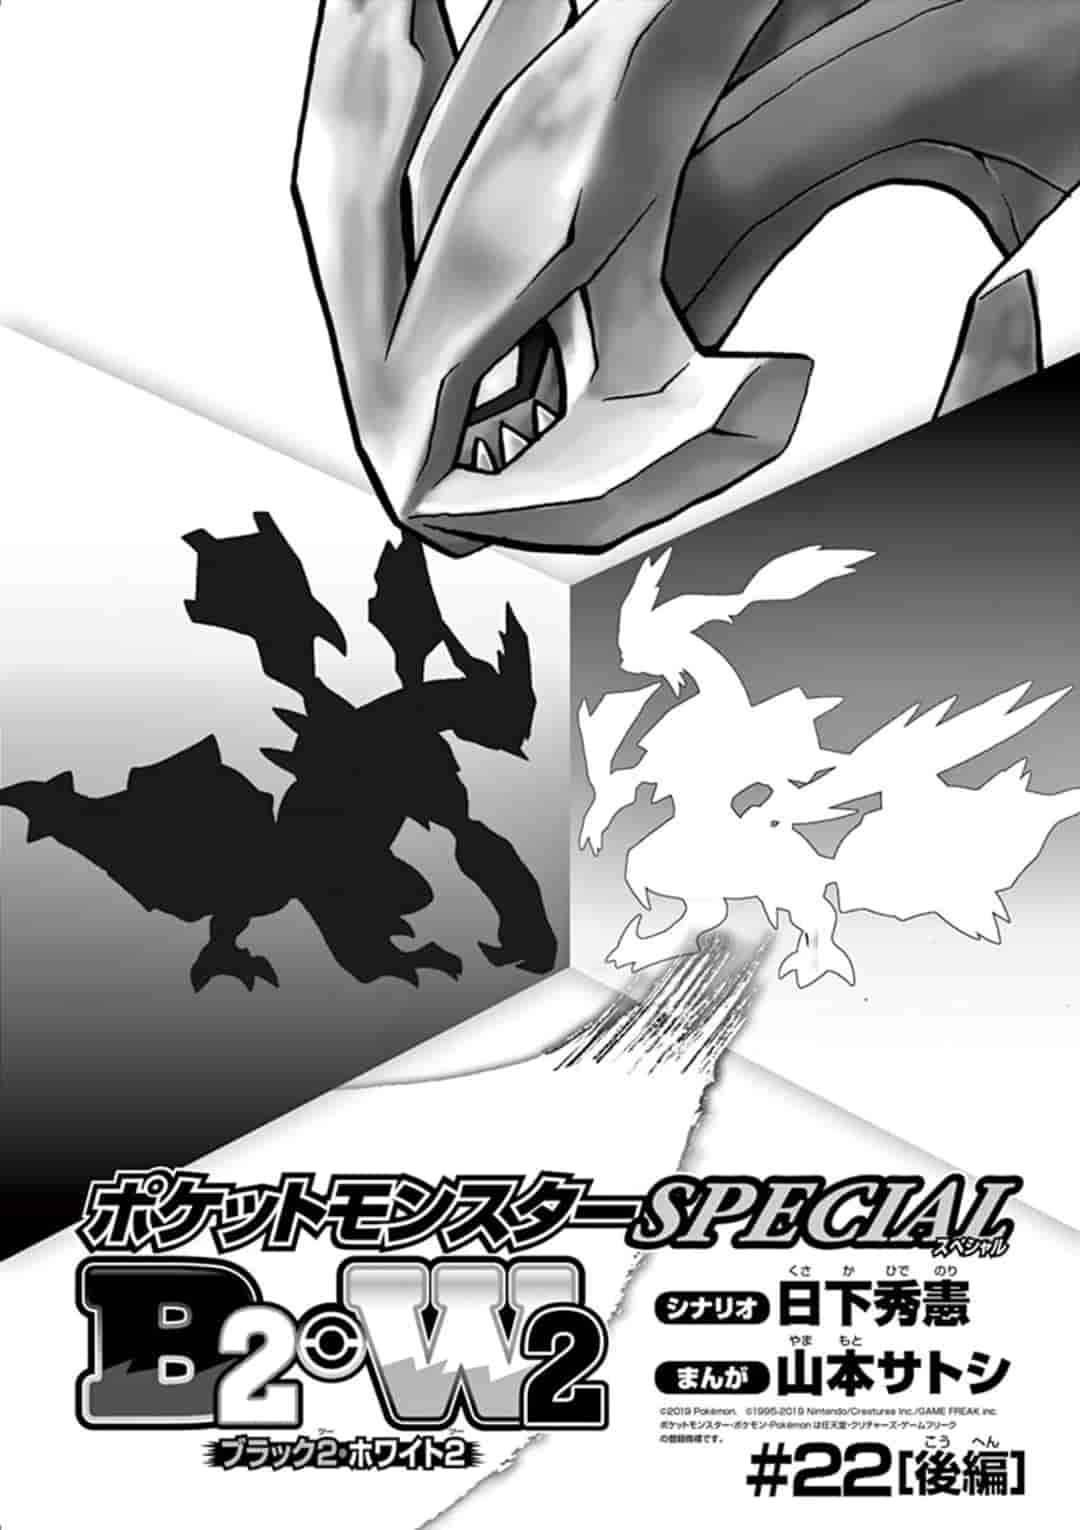 Pokémon Special Ch. 546.2